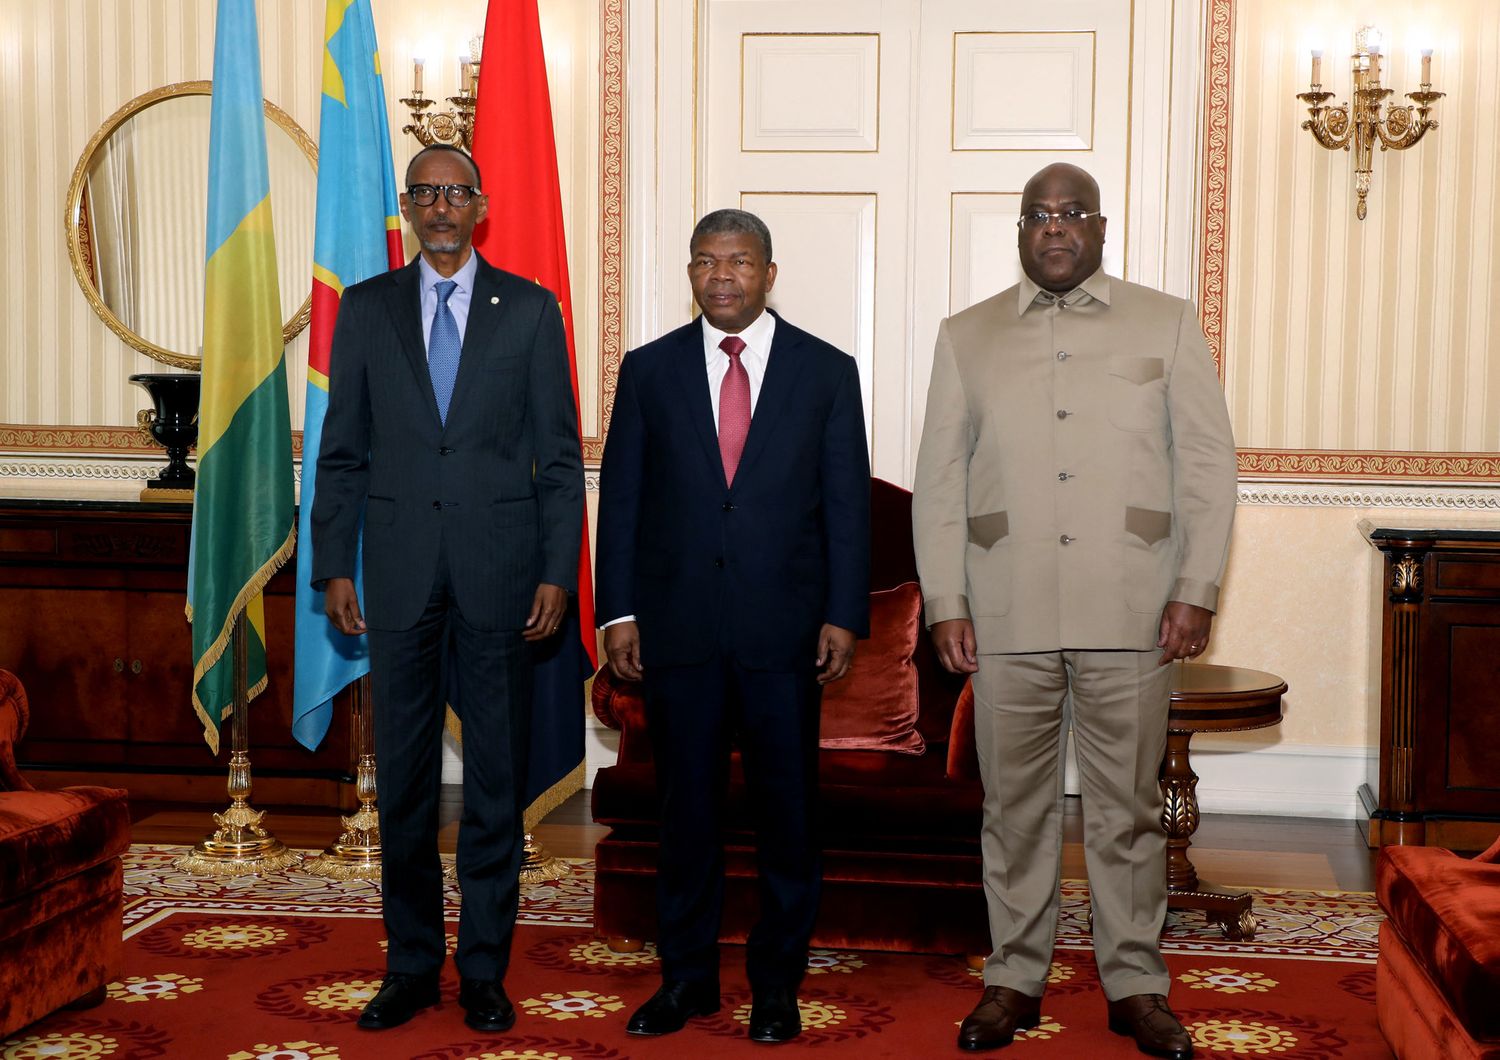 Da sinistra: il presidente del Ruanda Paul Kagame, il presidente dell'Angola Joao Lourenco e il presidente del Congo&nbsp;Felix Tshisekedi